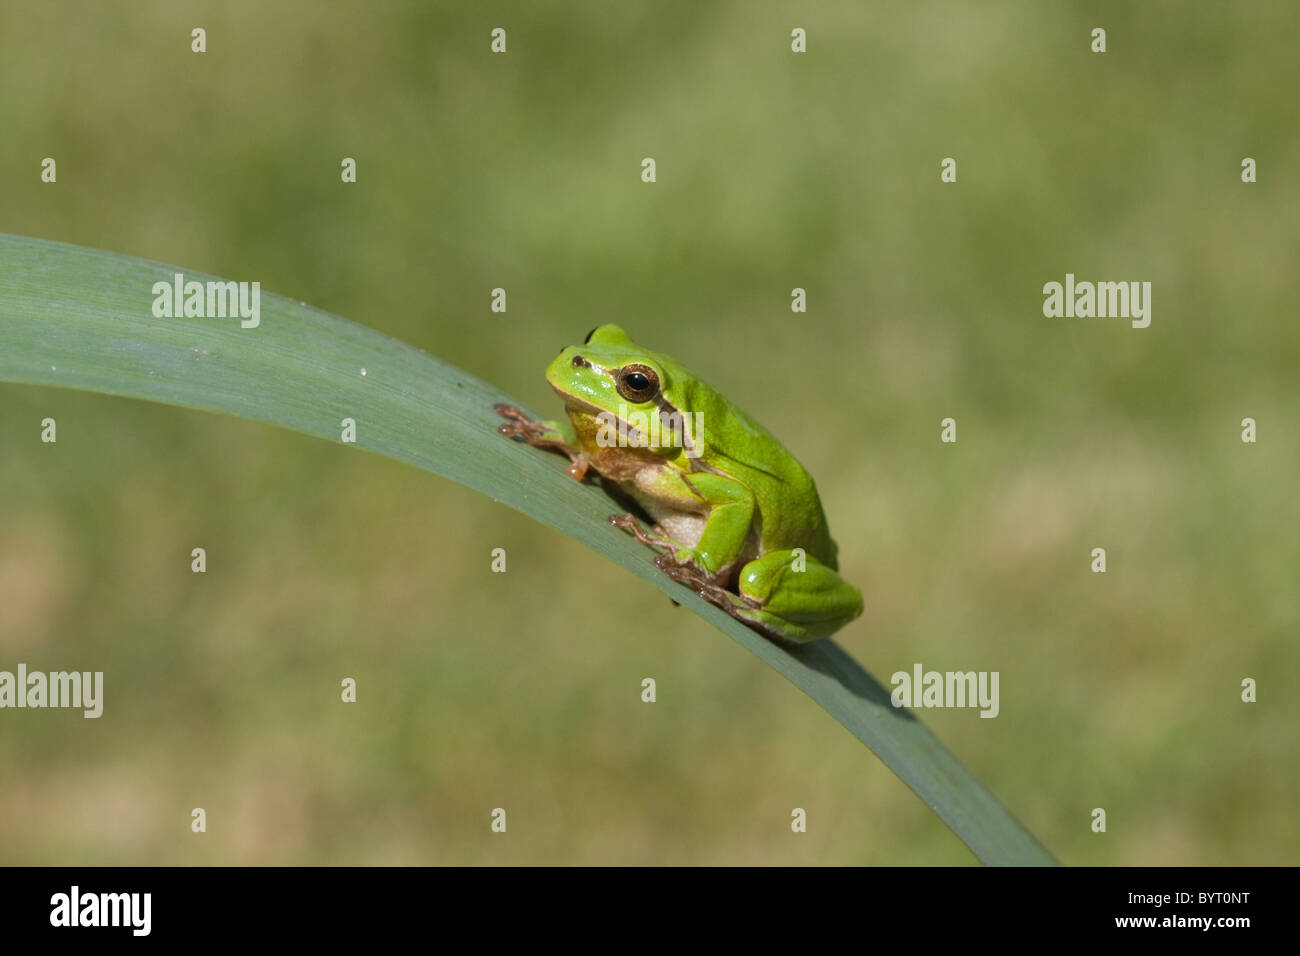 European tree frog (Hyla arborea) Stock Photo